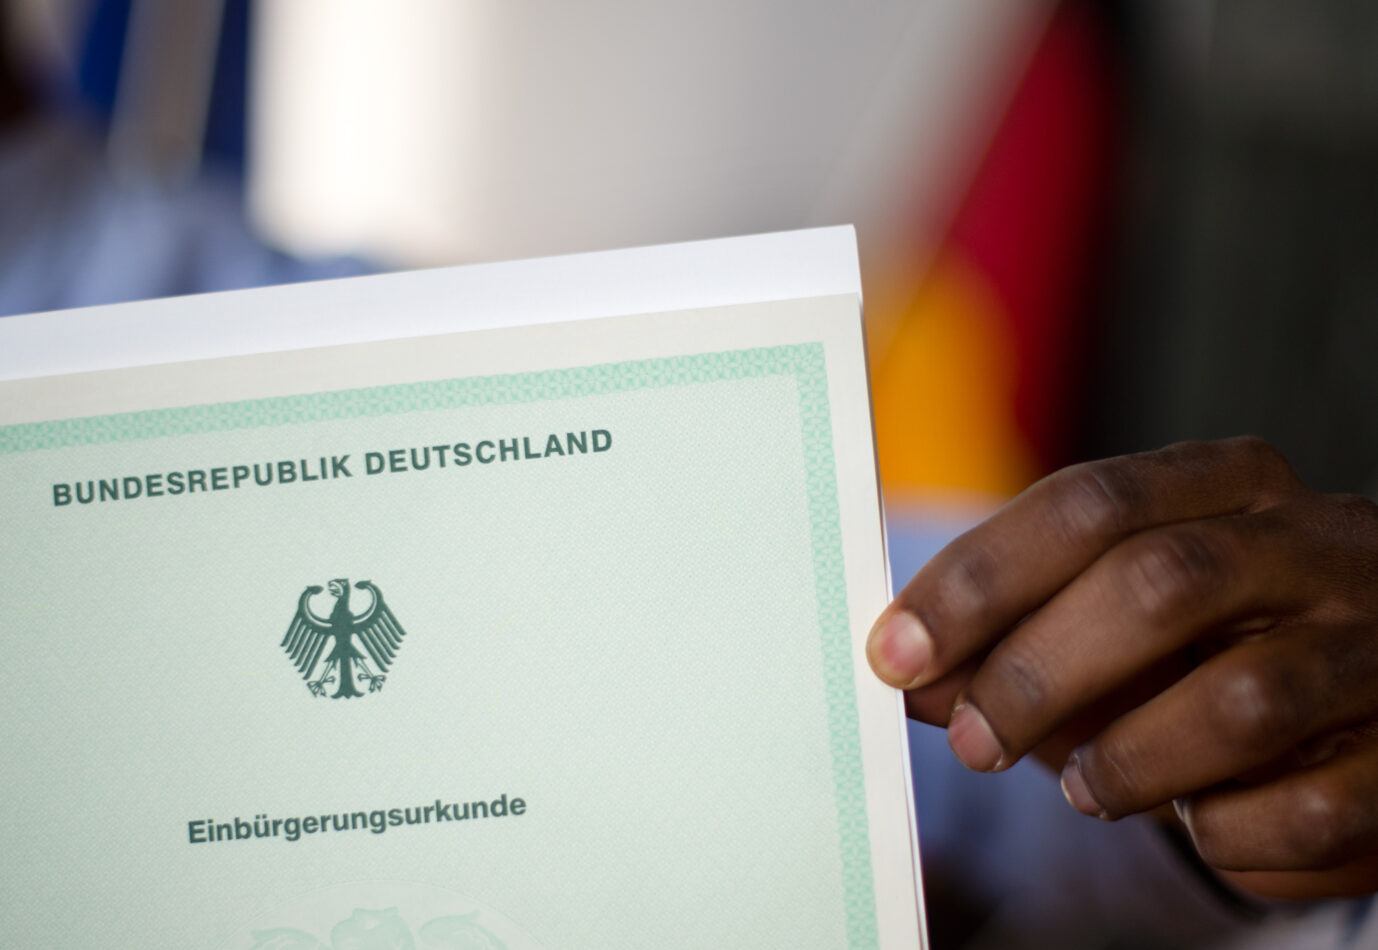 Einbürgerung eines Mannes aus Kamerun: Nach dem Willen der Ampelkoalition sollen Einwanderer schneller die deutsche Staatsbürgerschaft erhalten können und so Teil des deutschen Volkes werden